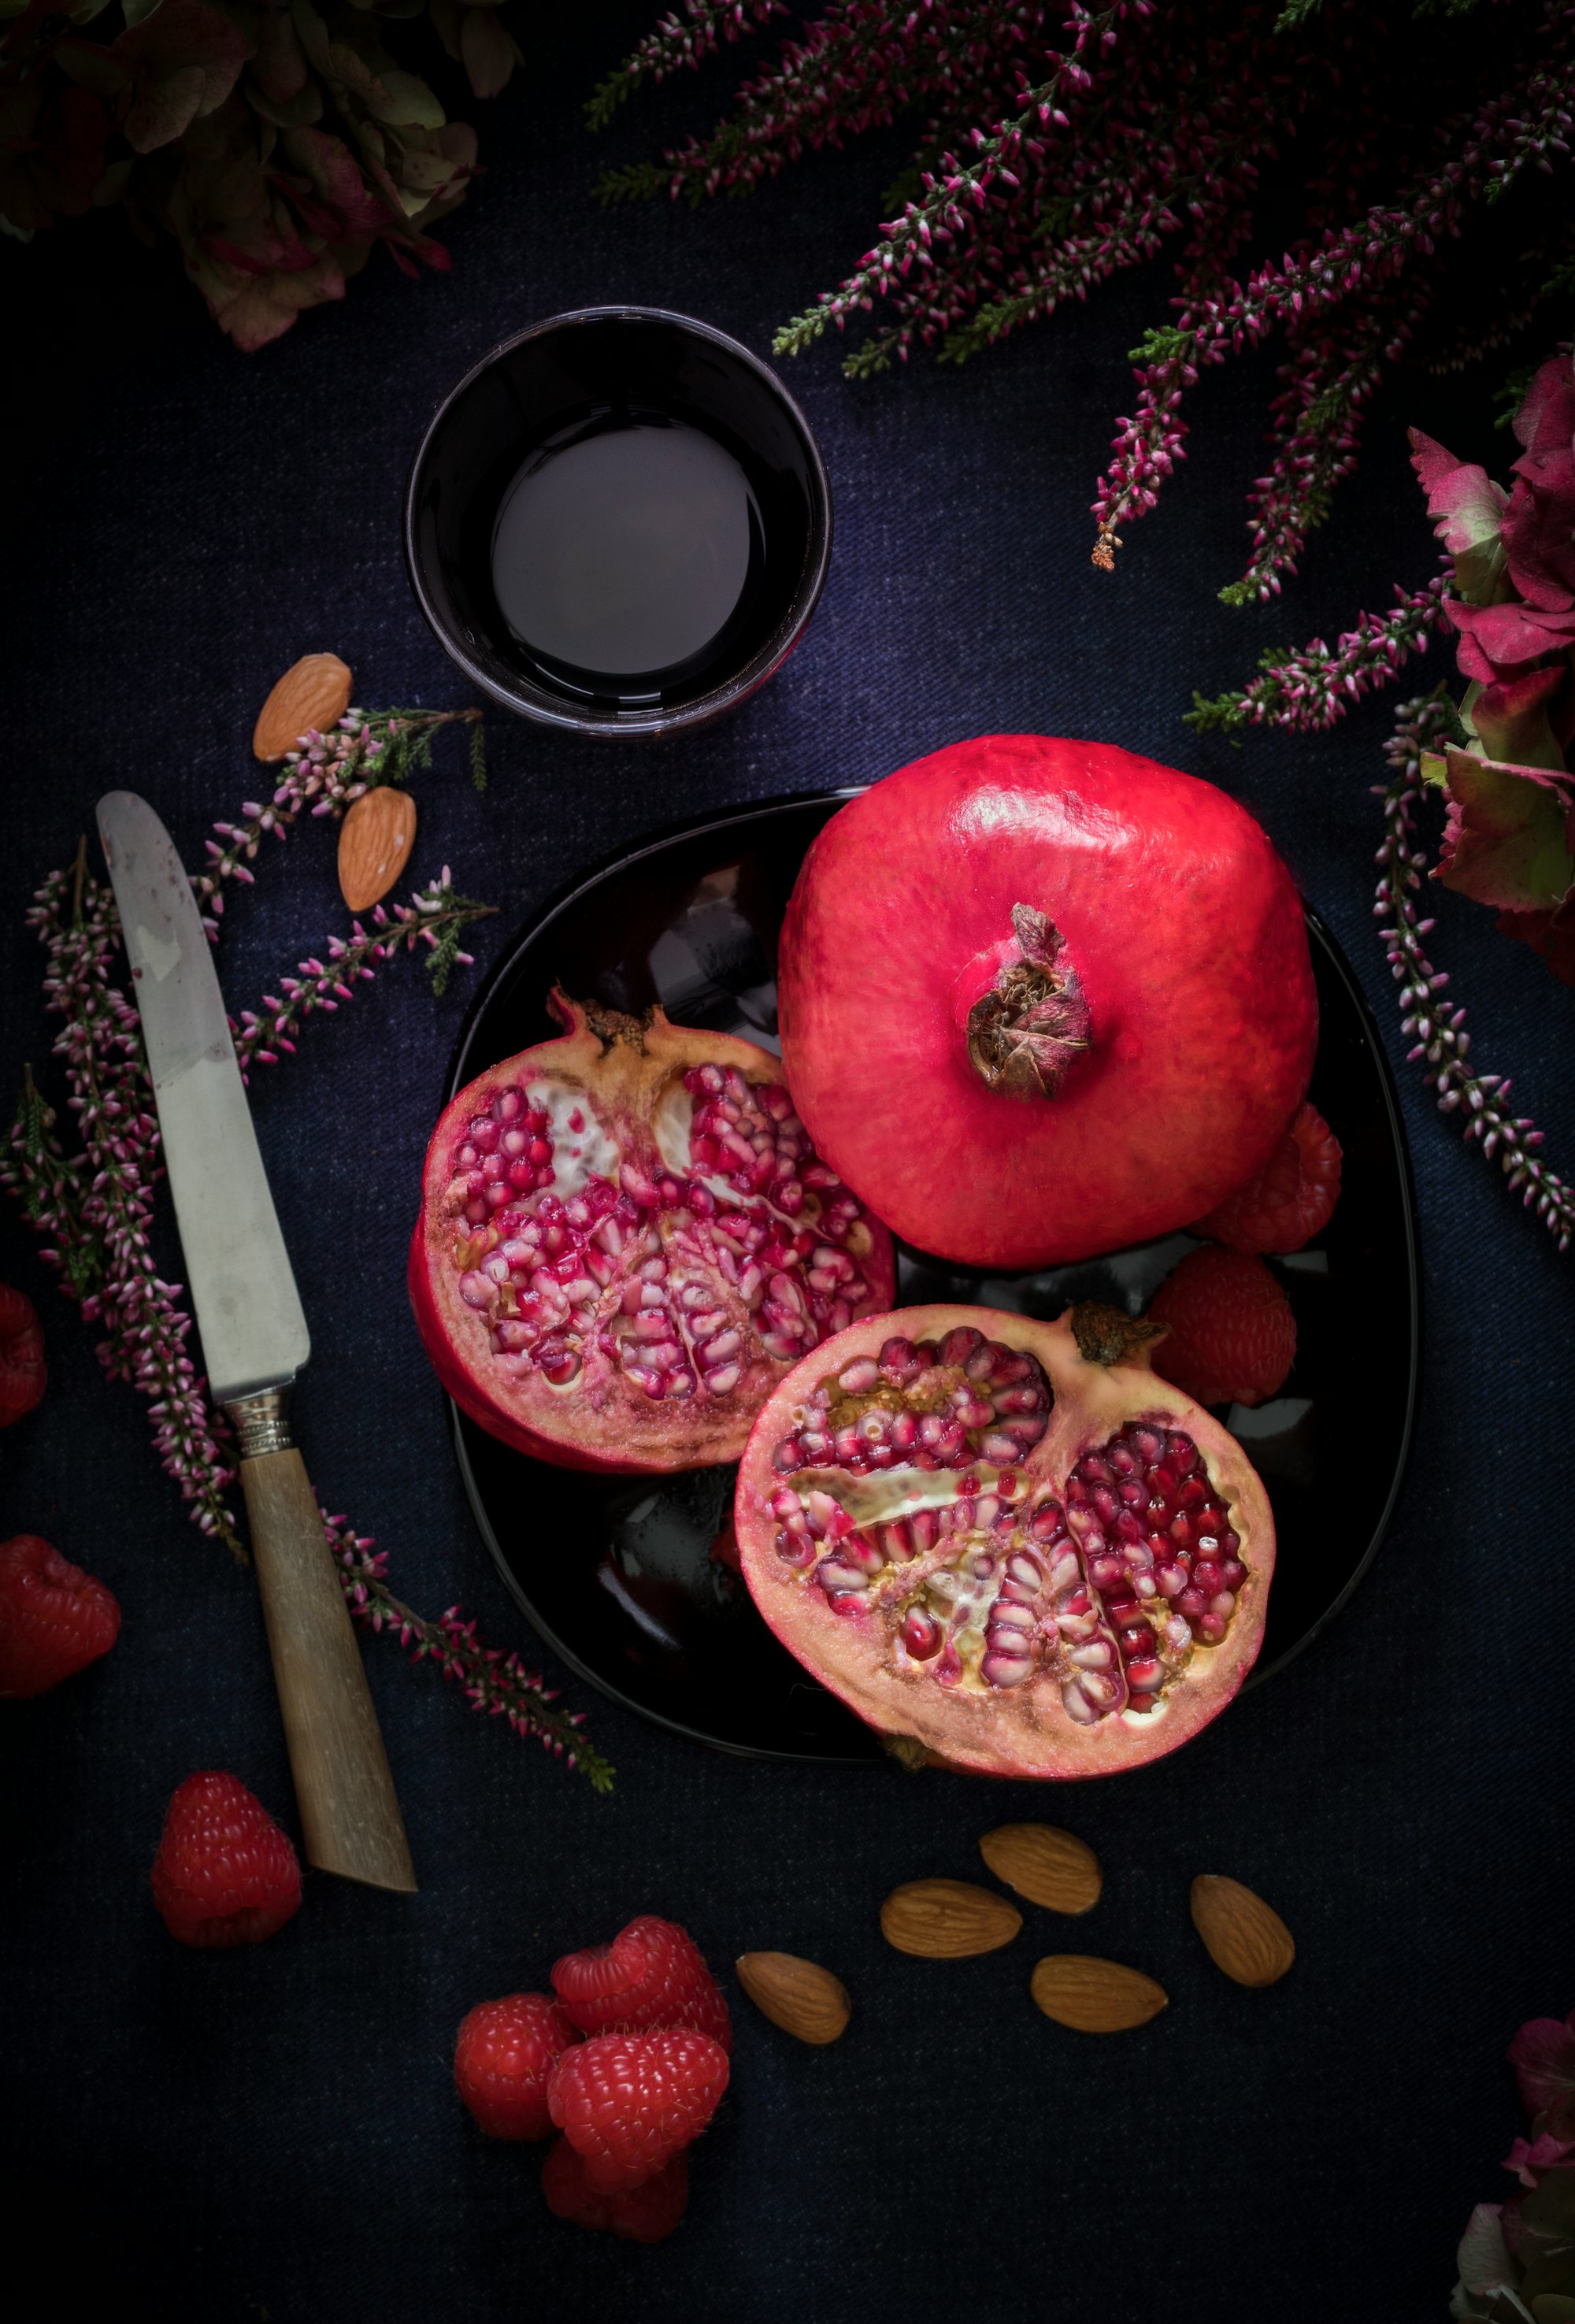 A pomegranate in autumn